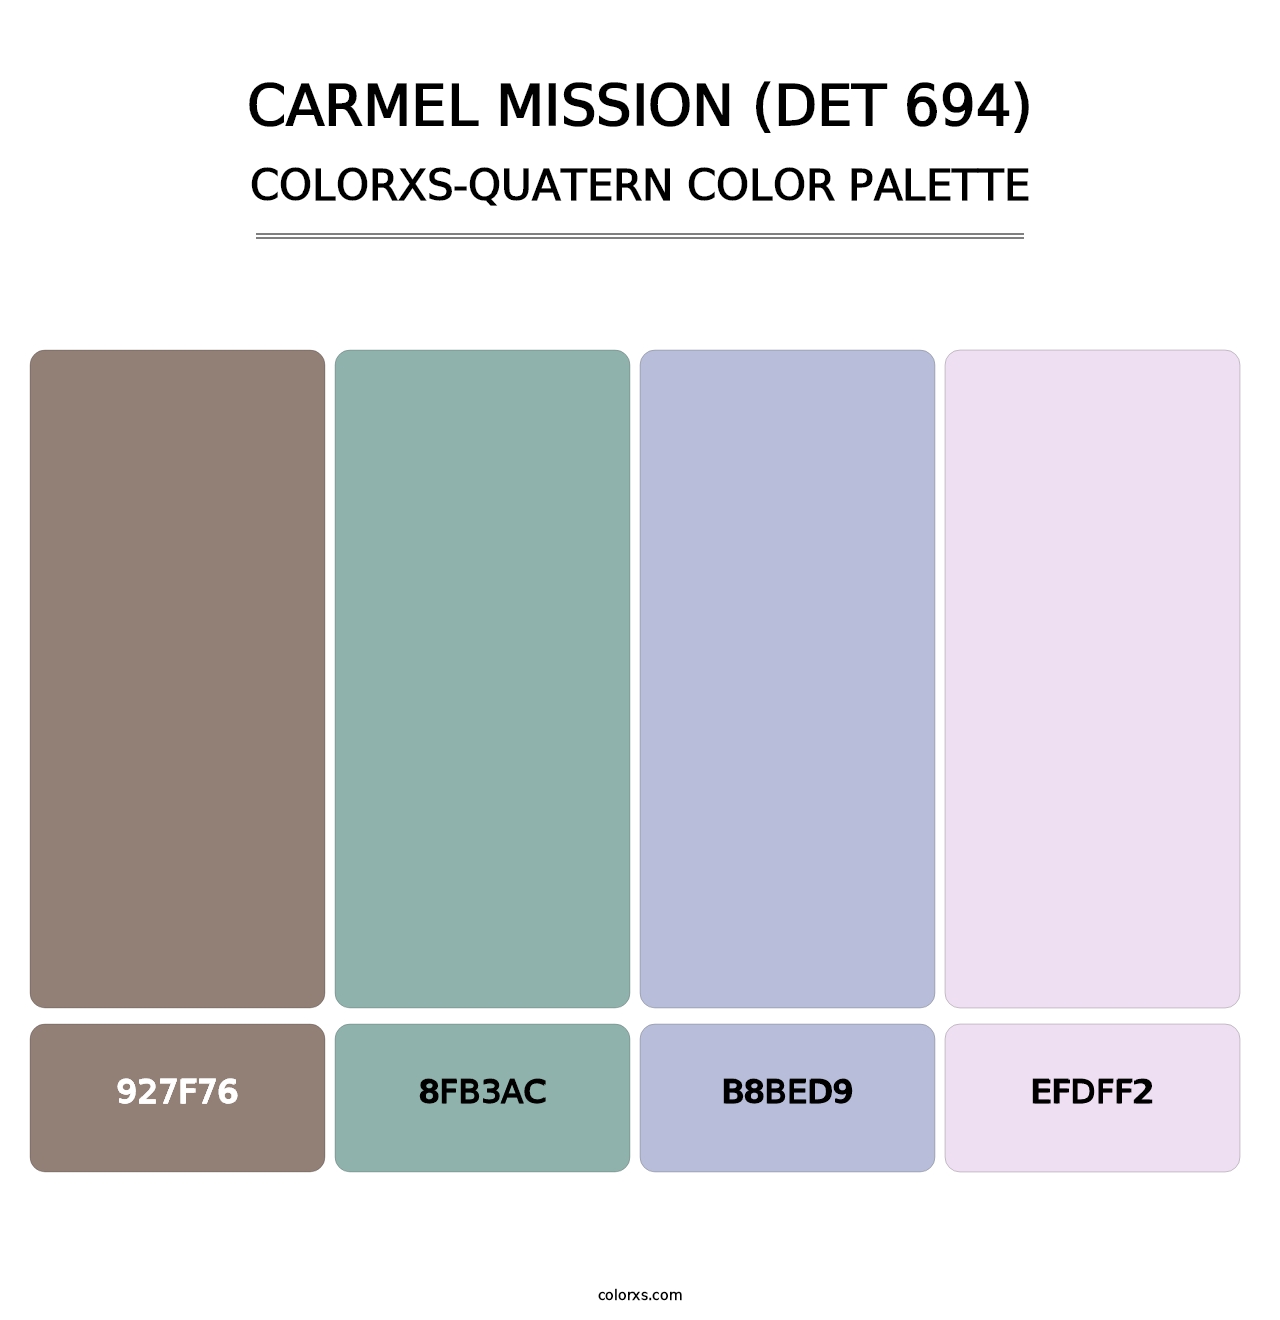 Carmel Mission (DET 694) - Colorxs Quatern Palette